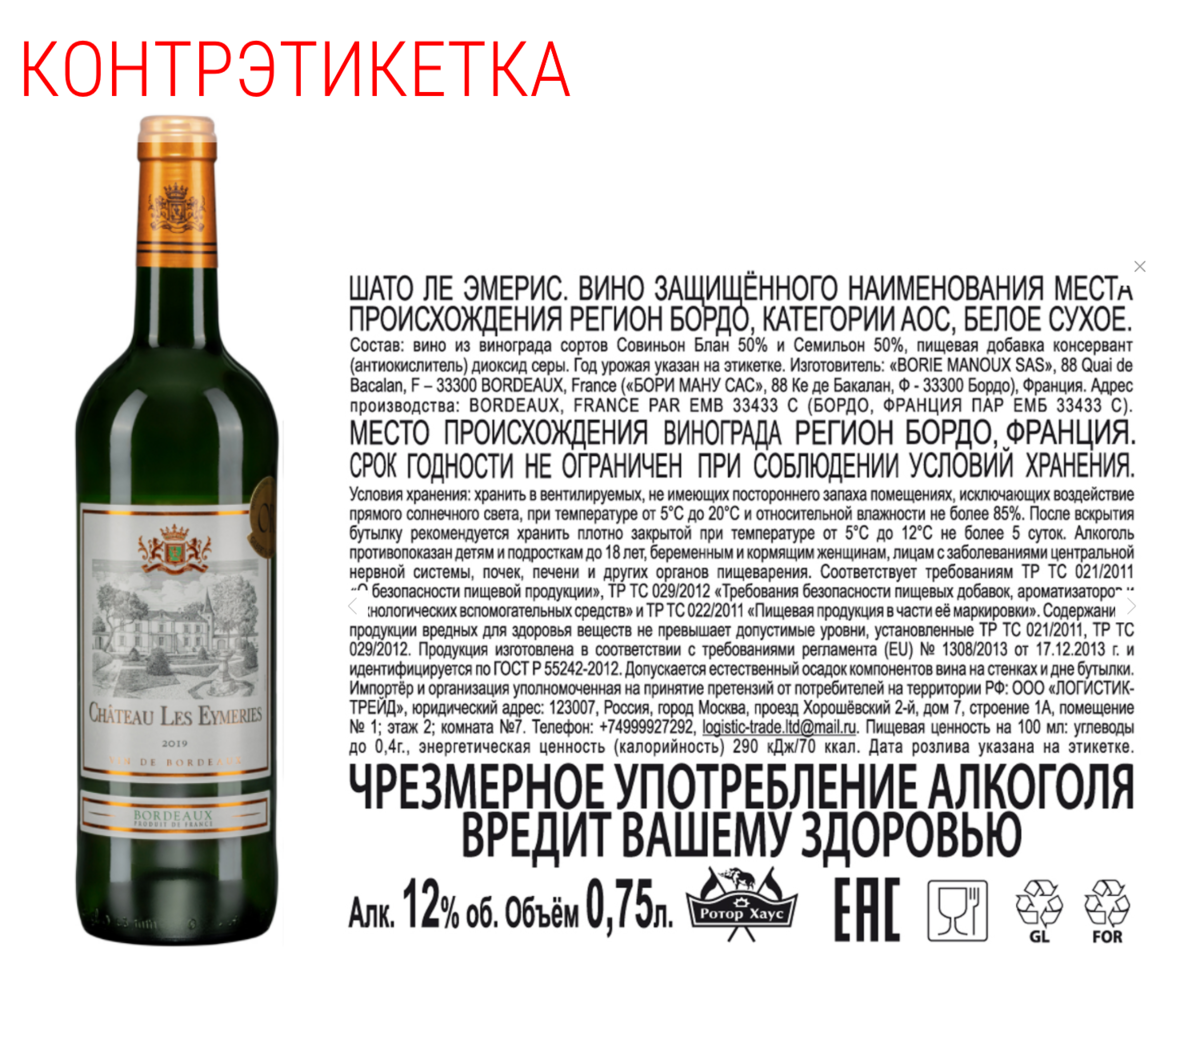 Контрэтикетки вина. Контрэтикетка на вине. Контрэтикетка российское вино. Текст вина 84